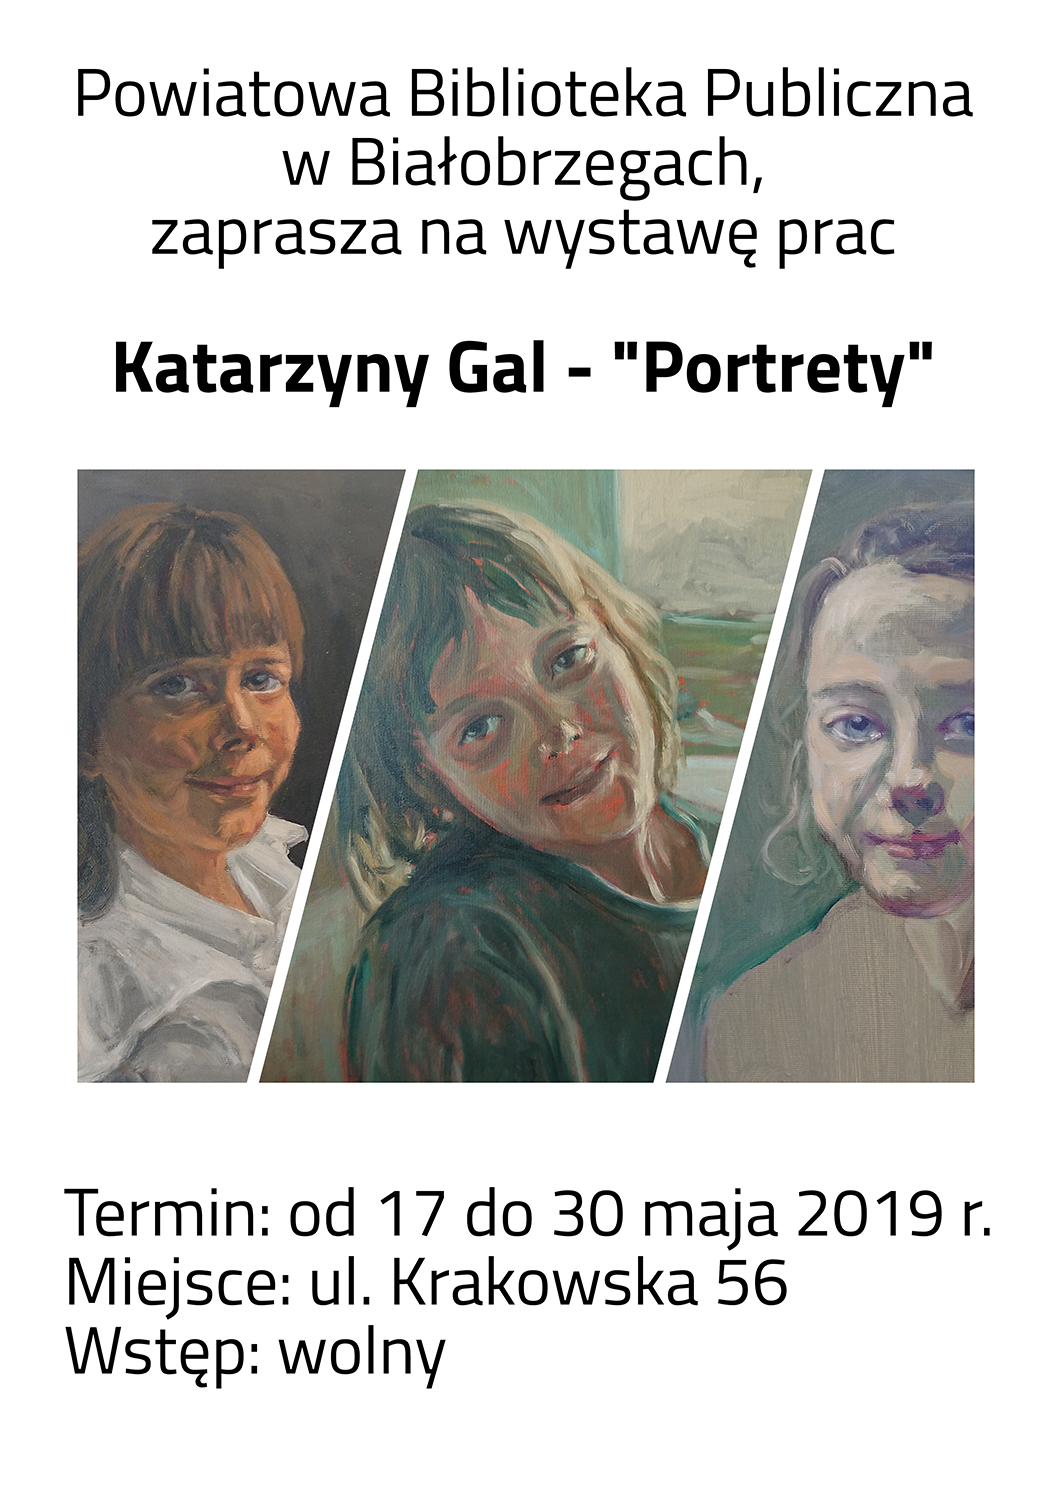 Katarzyna Gal - Portrety